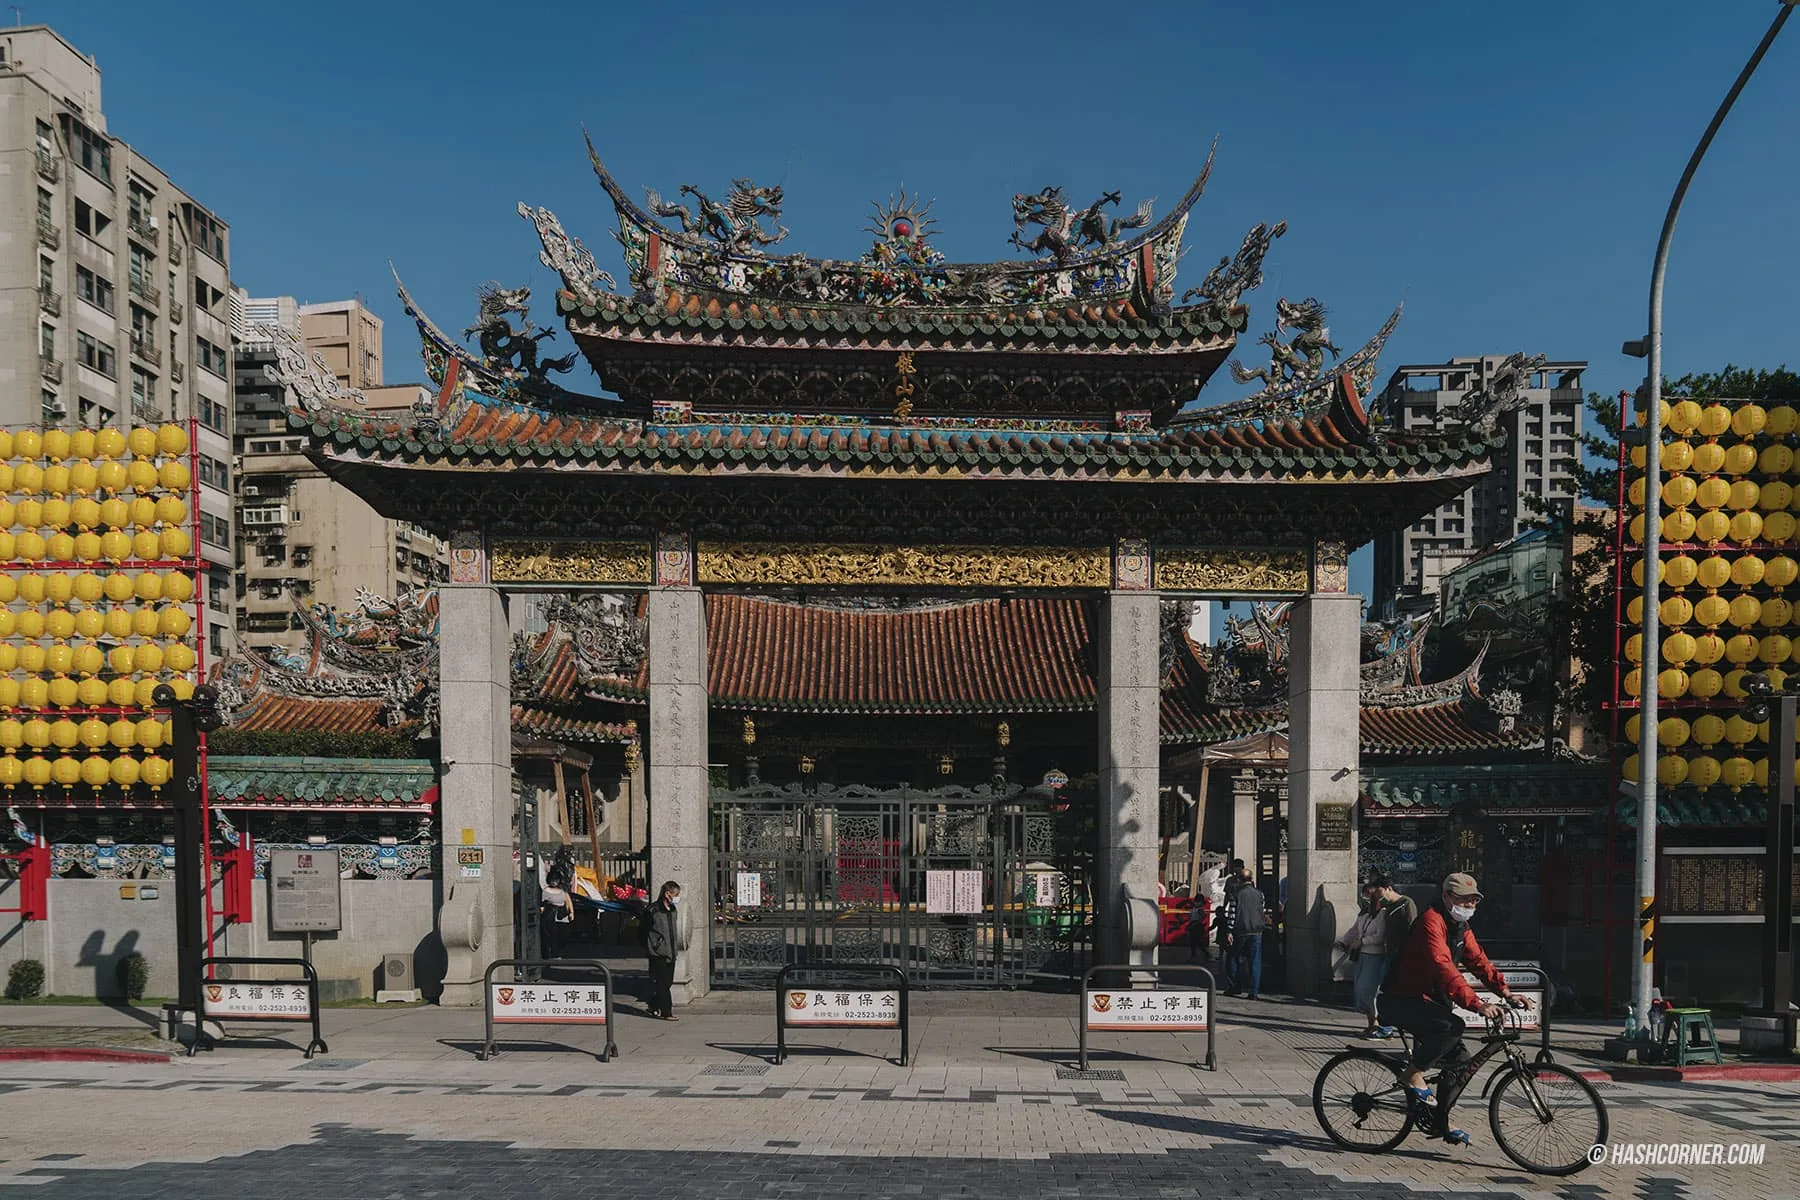 รีวิว วัดหลงซาน (Longshan Temple) x ไทเป วัดศักดิ์สิทธิ์มากที่สุดในไต้หวัน